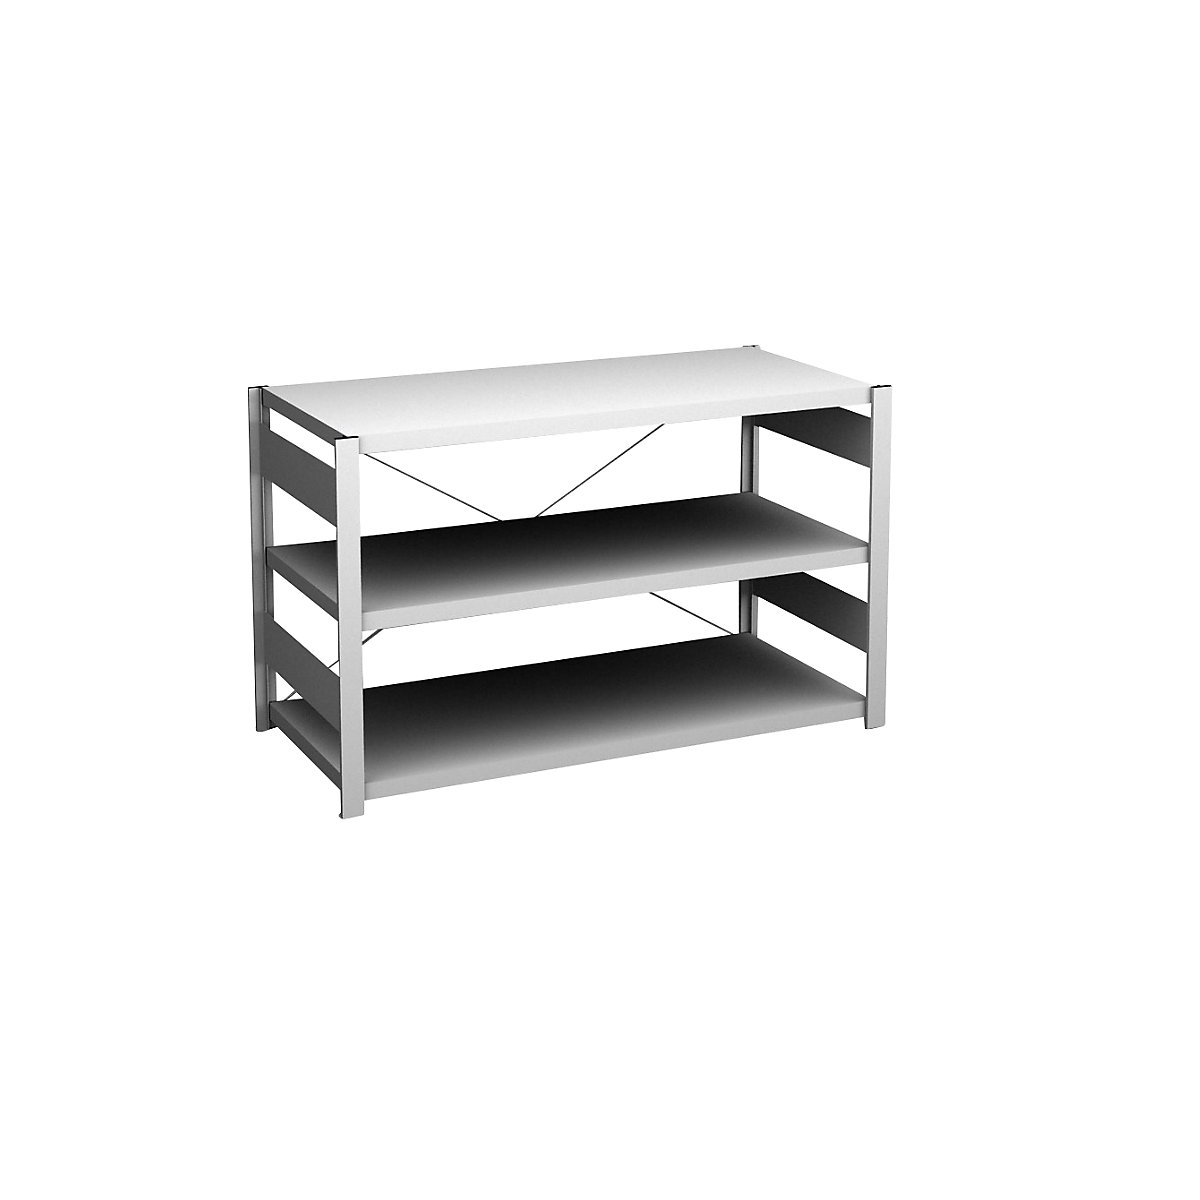 Sideboard shelving unit, light grey – hofe, height 825 mm, 3 shelves, standard shelf unit, shelf depth 600 mm, max. shelf load 190 kg-8